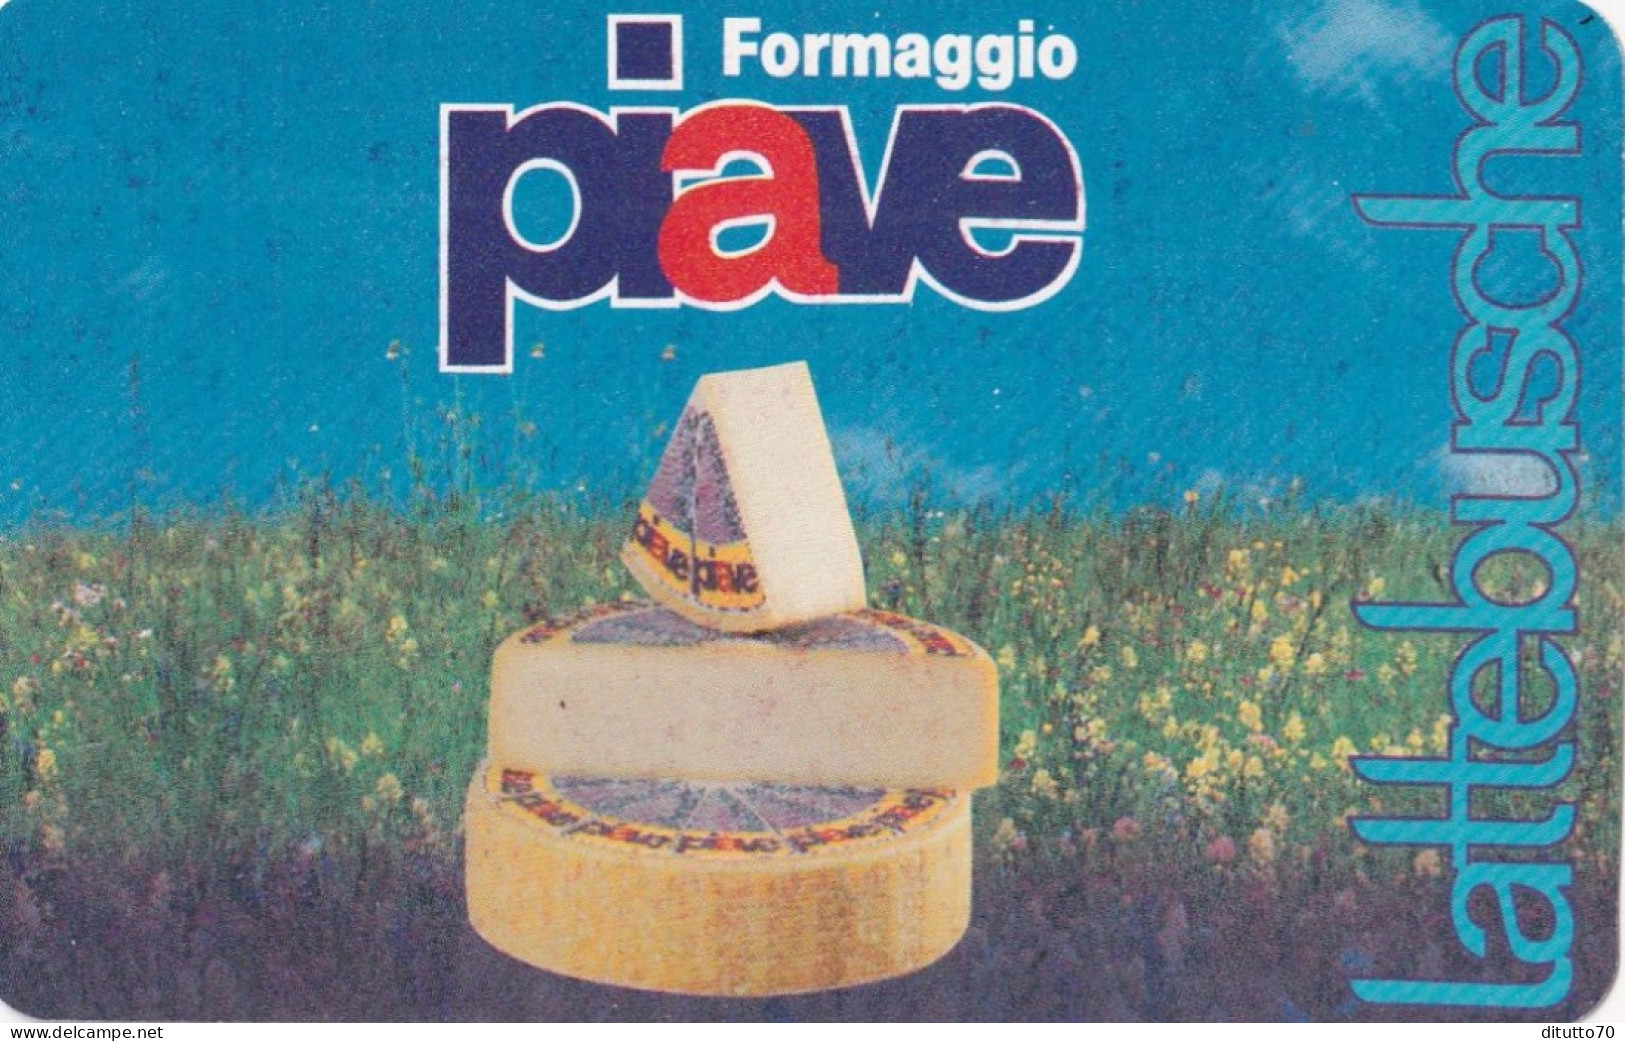 Calendarietto - Formaggio Piave - Anno 1996 - Petit Format : 1991-00